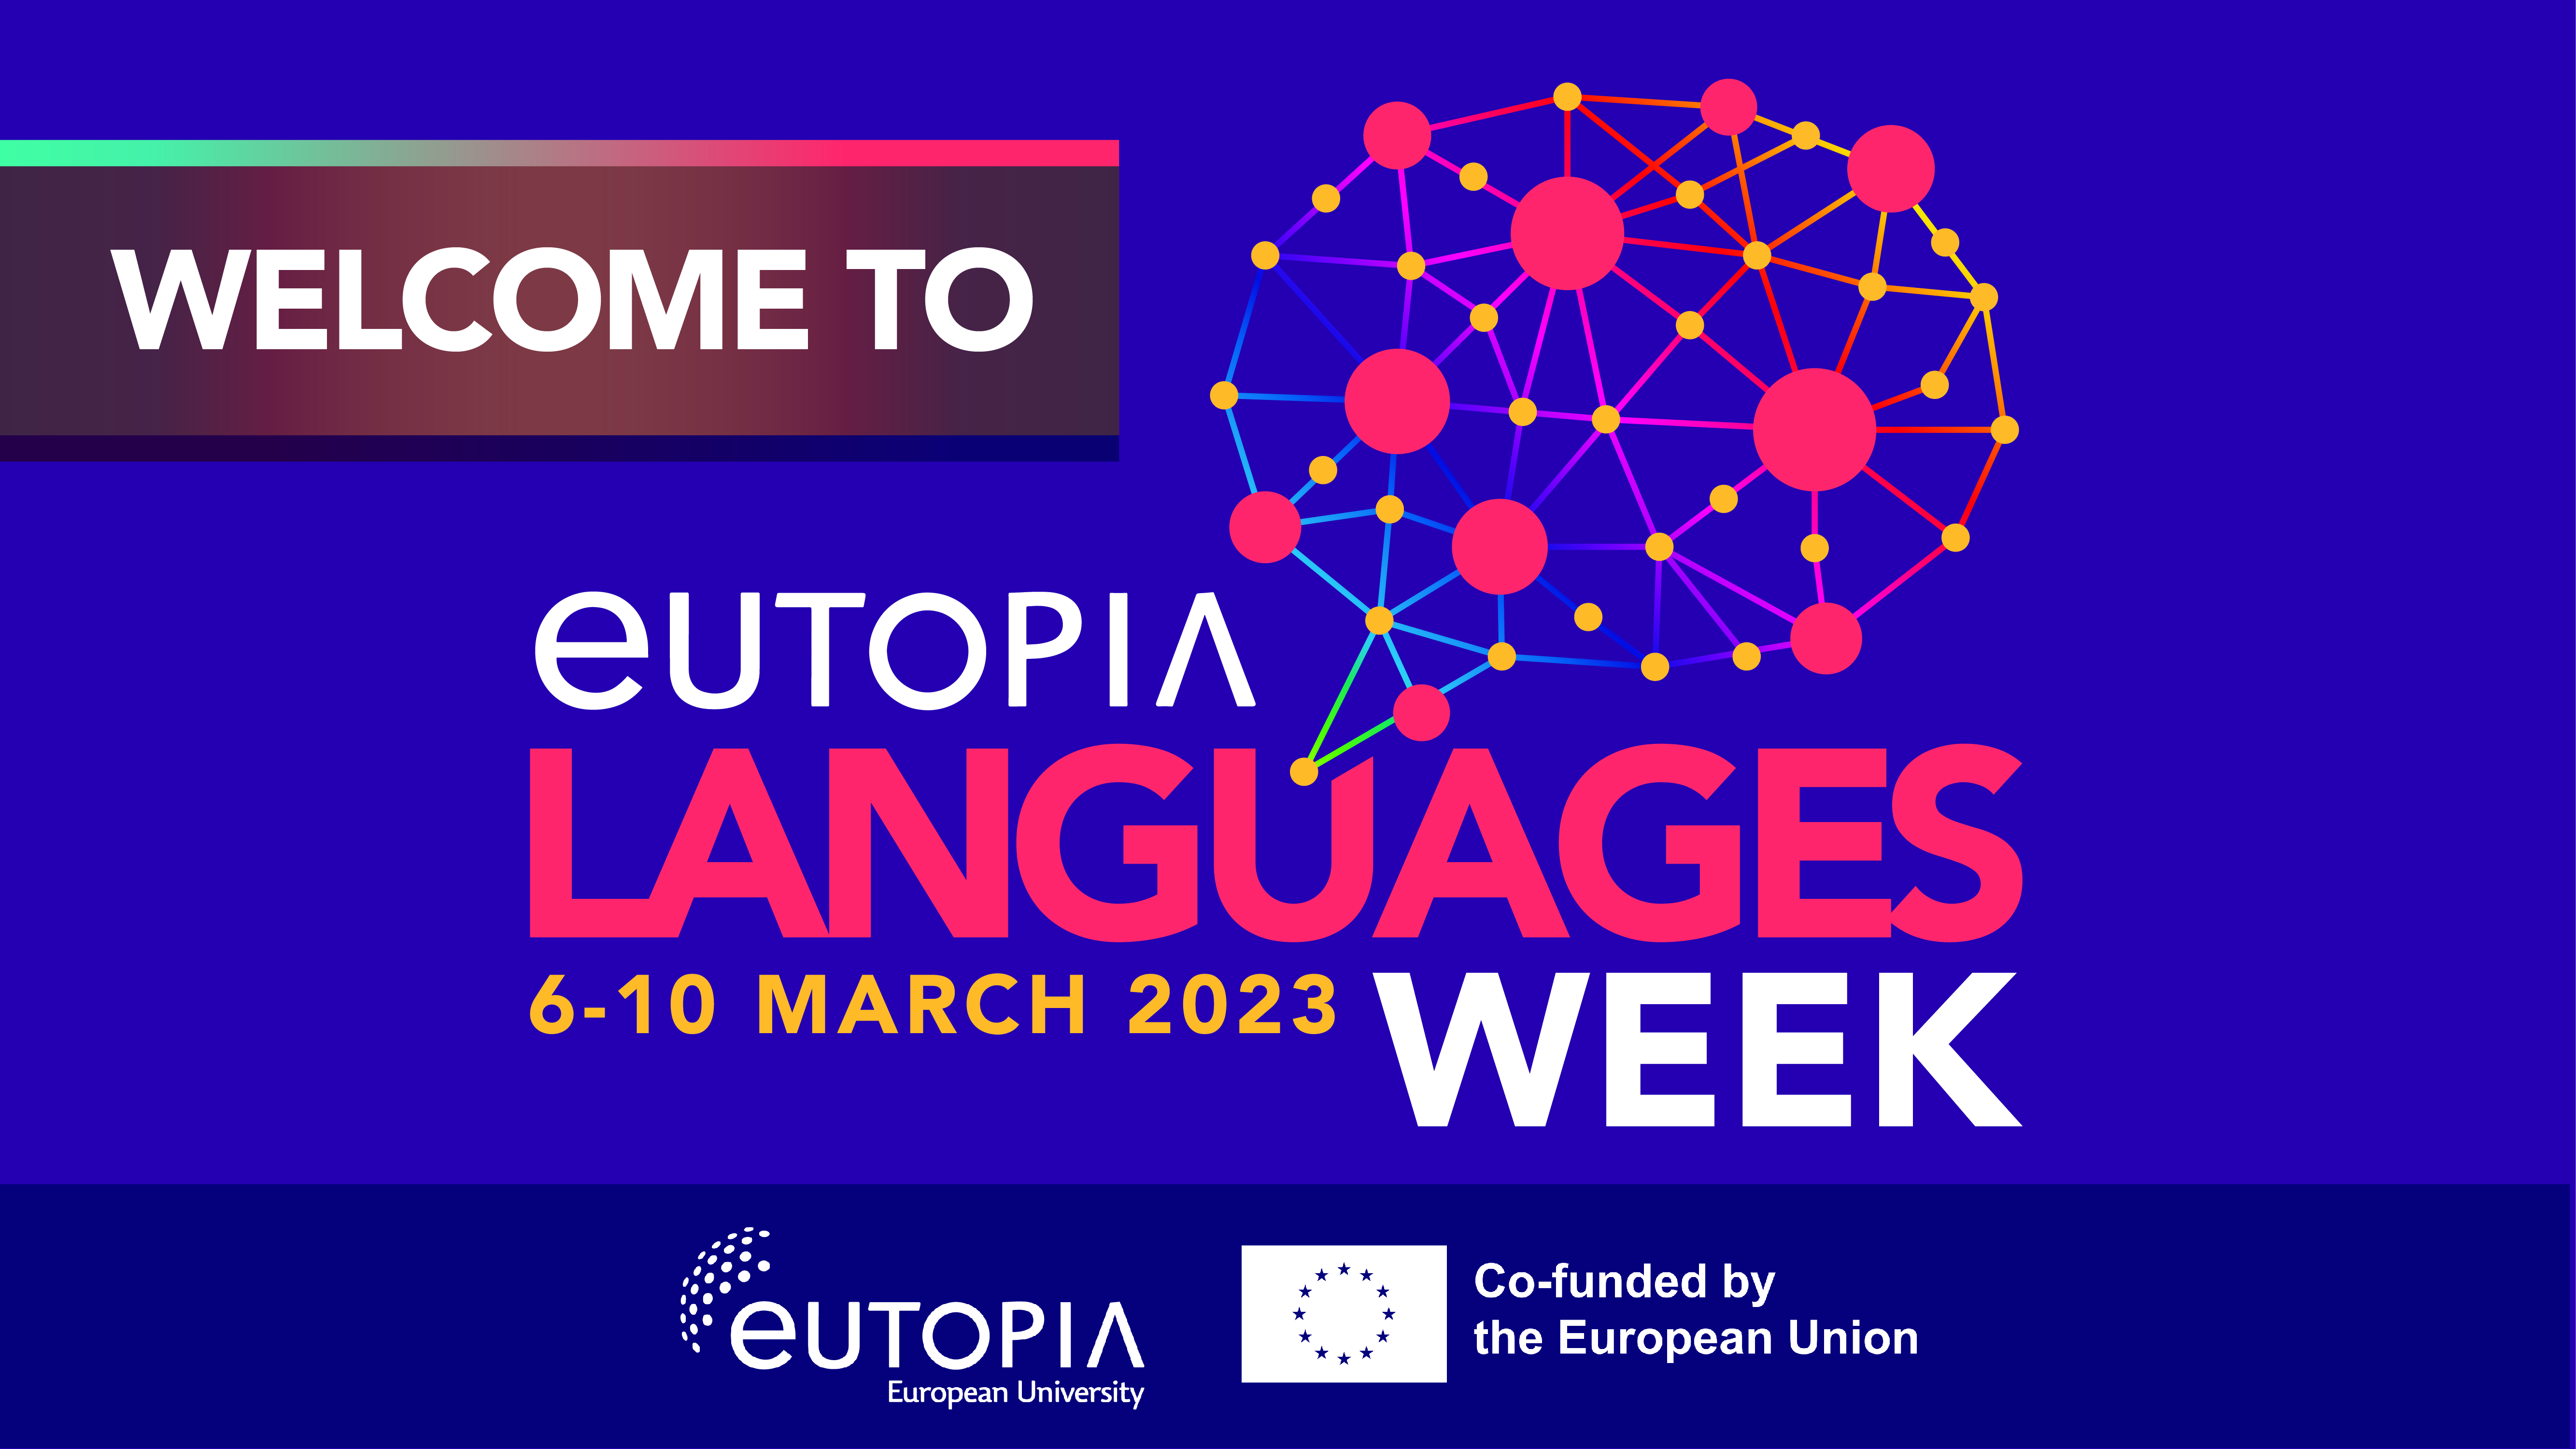 EUTOPIA Languages Week